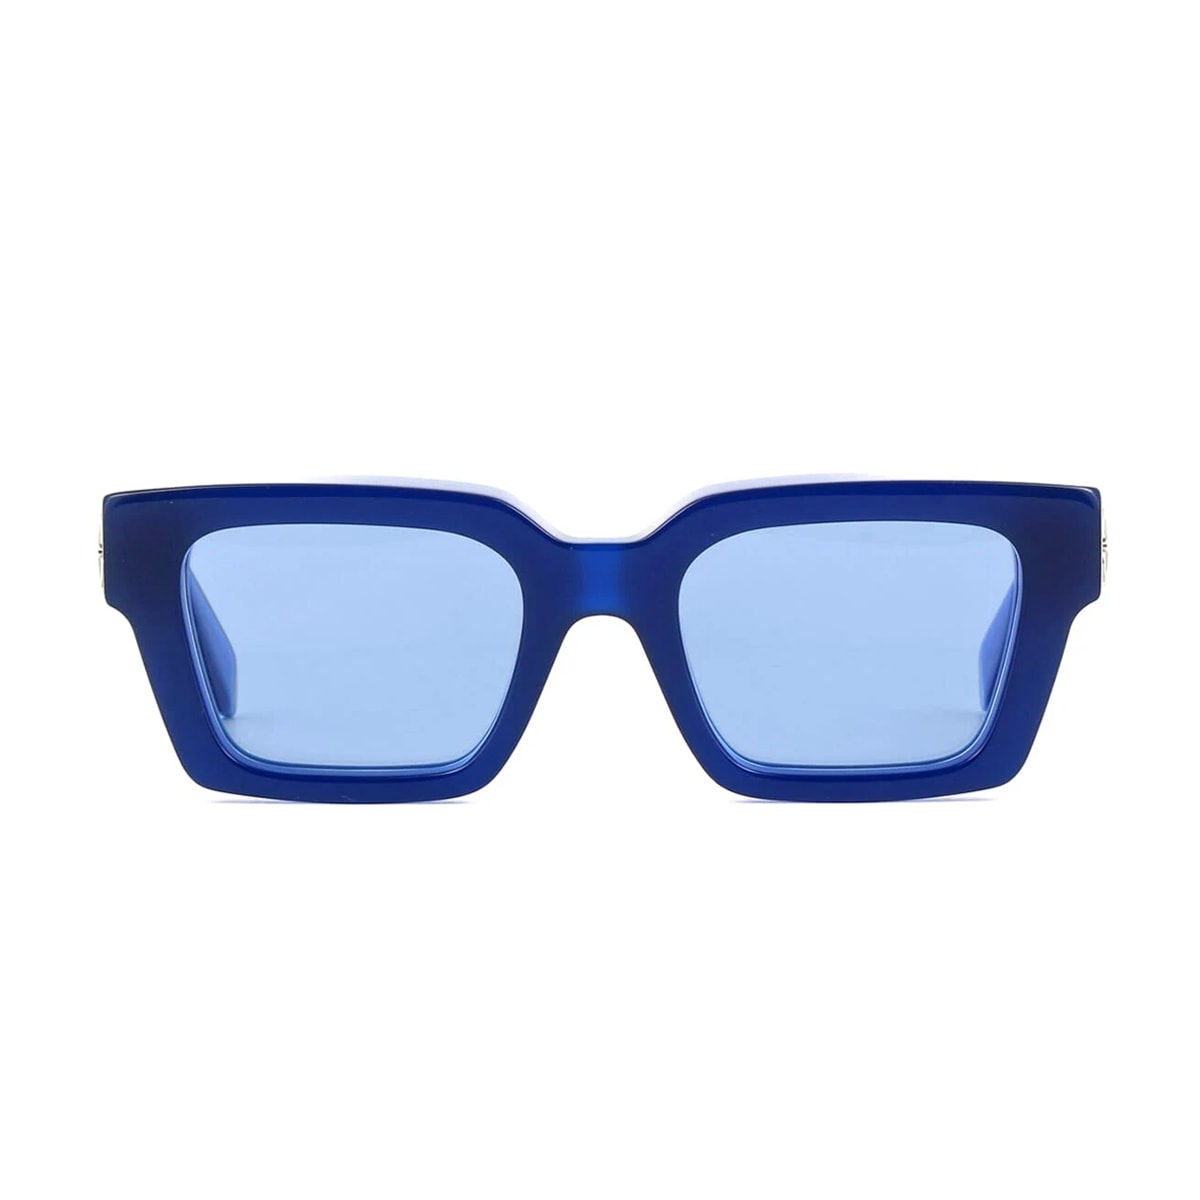 Off-White Oeri126 Virgil 4540 Blue Sunglasses